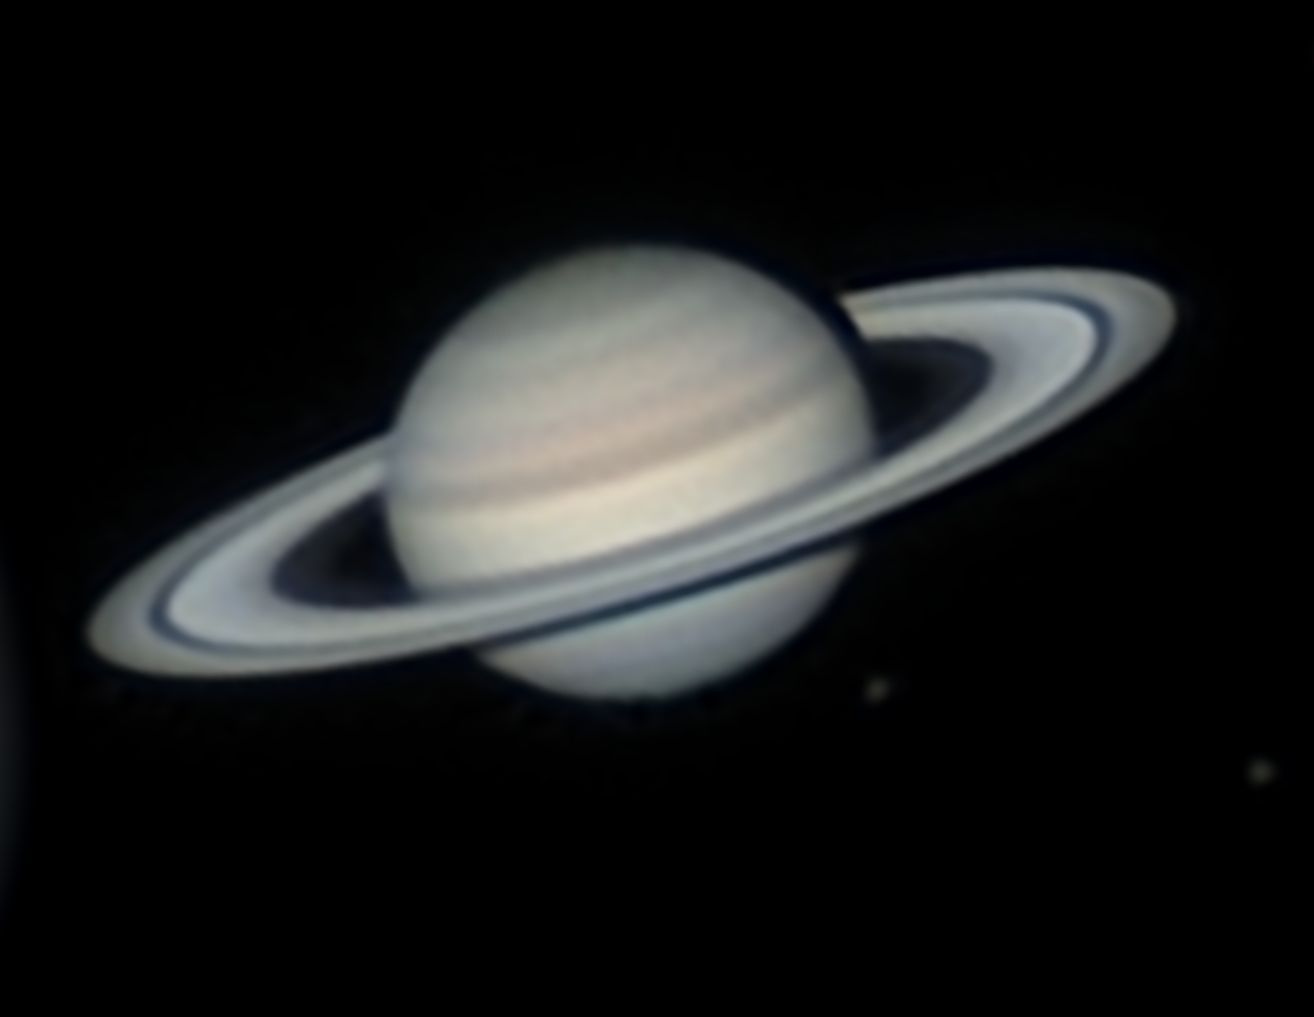 Saturne.jpg.e054ece433a4cd0c41d2bb8d957a4dce.jpg